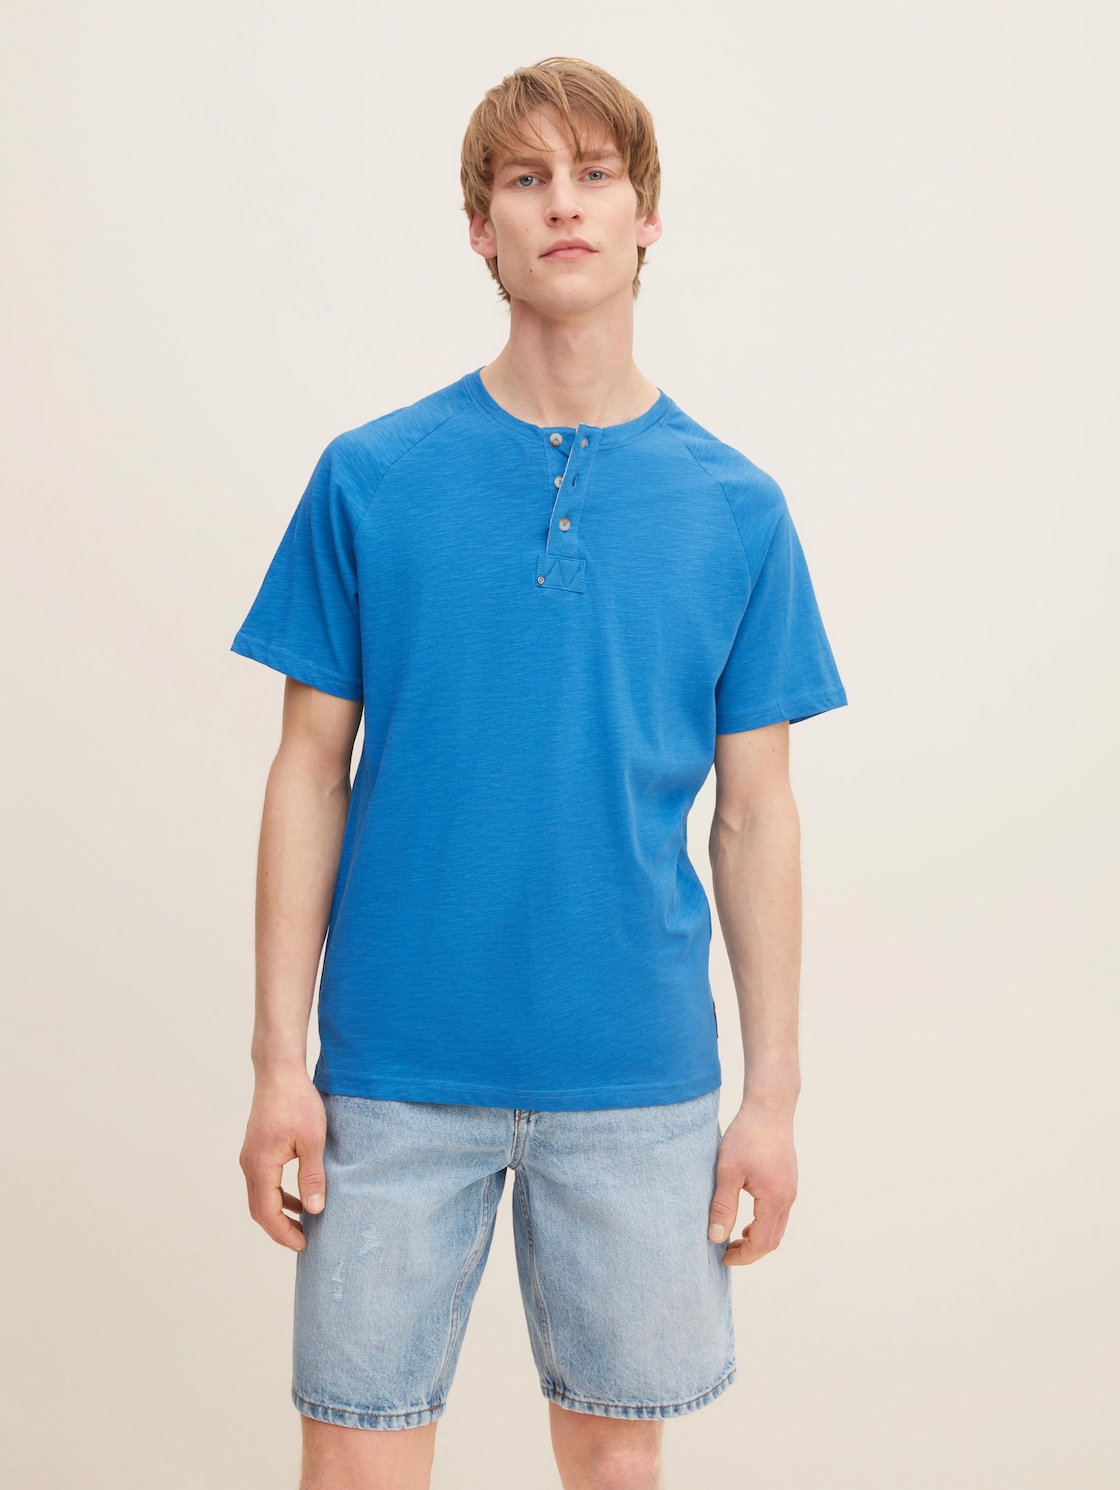 TOM TAILOR Herren Basic T-Shirt in Melange Optik, blau, Gr. XL,